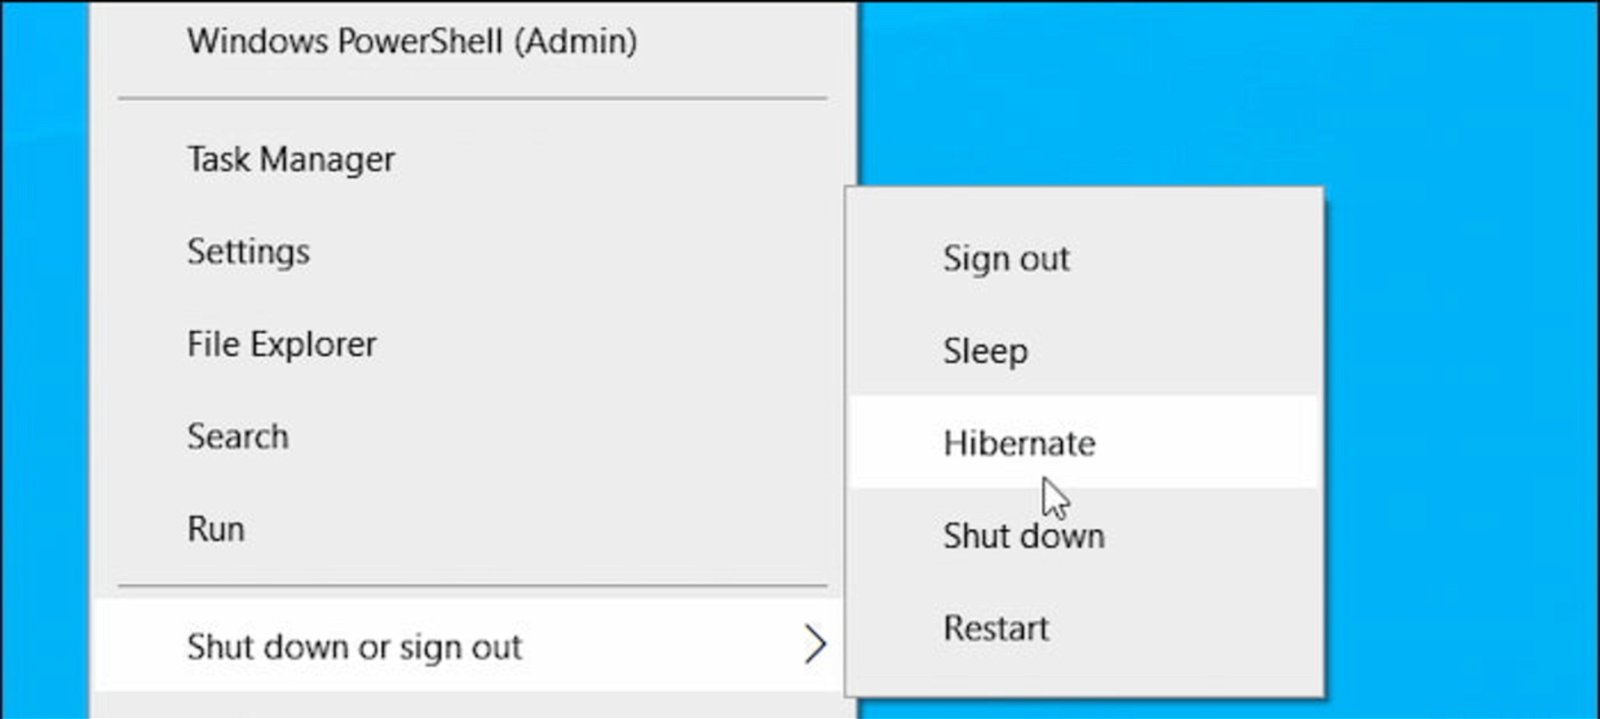 El modo hibernación de Windows ha sido diseñado para apagar el ordenador, desactivar las conexiones y ahorrar energía